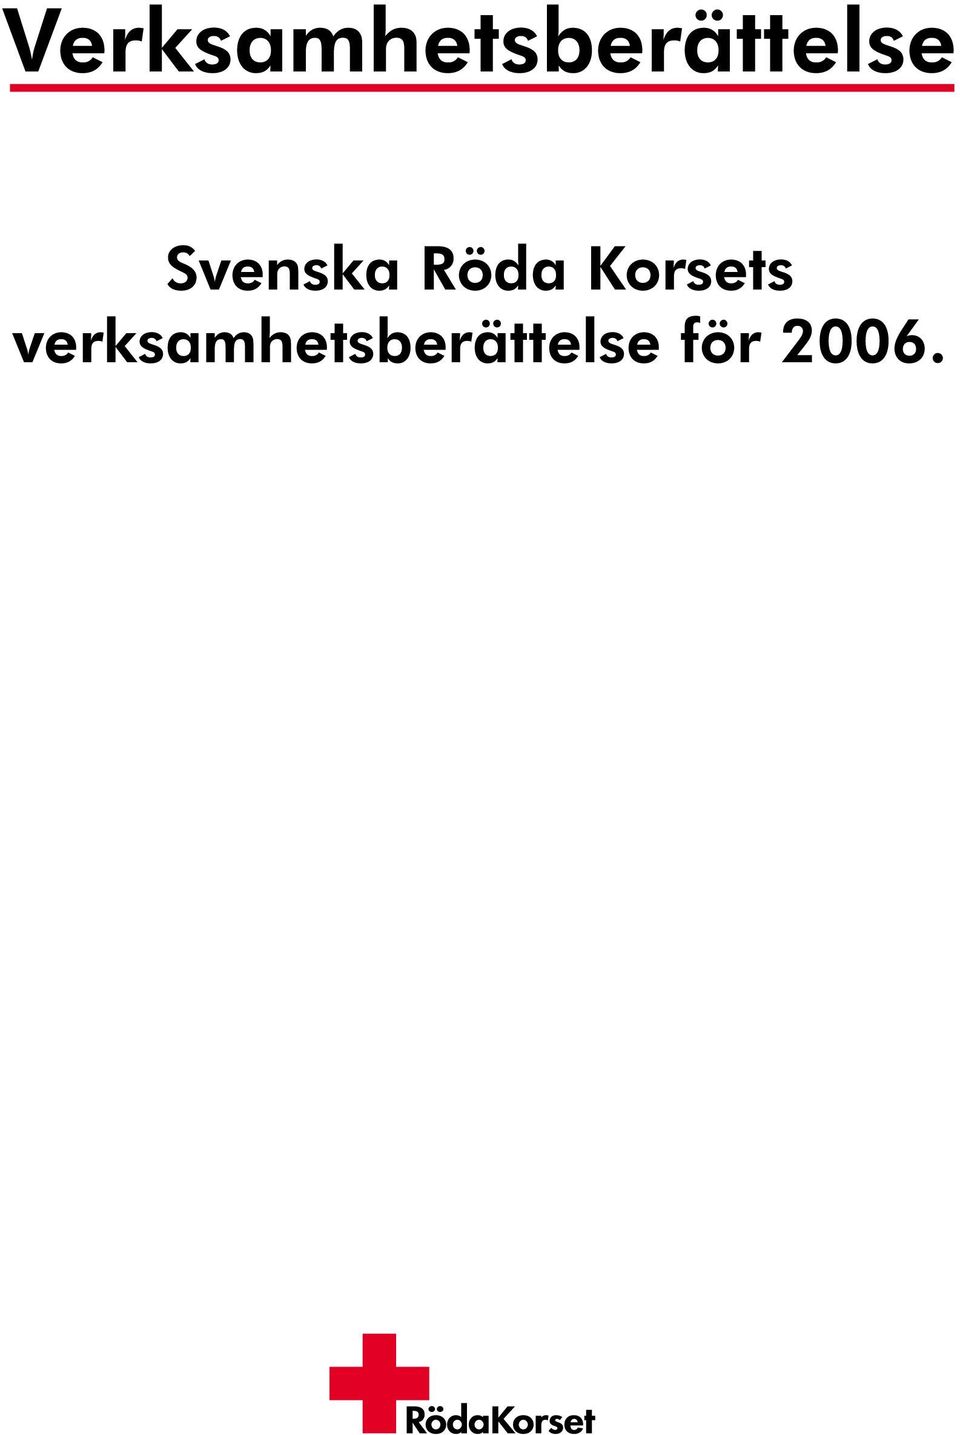 Verksamhetsberättelse. Svenska Röda Korsets verksamhetsberättelse ...